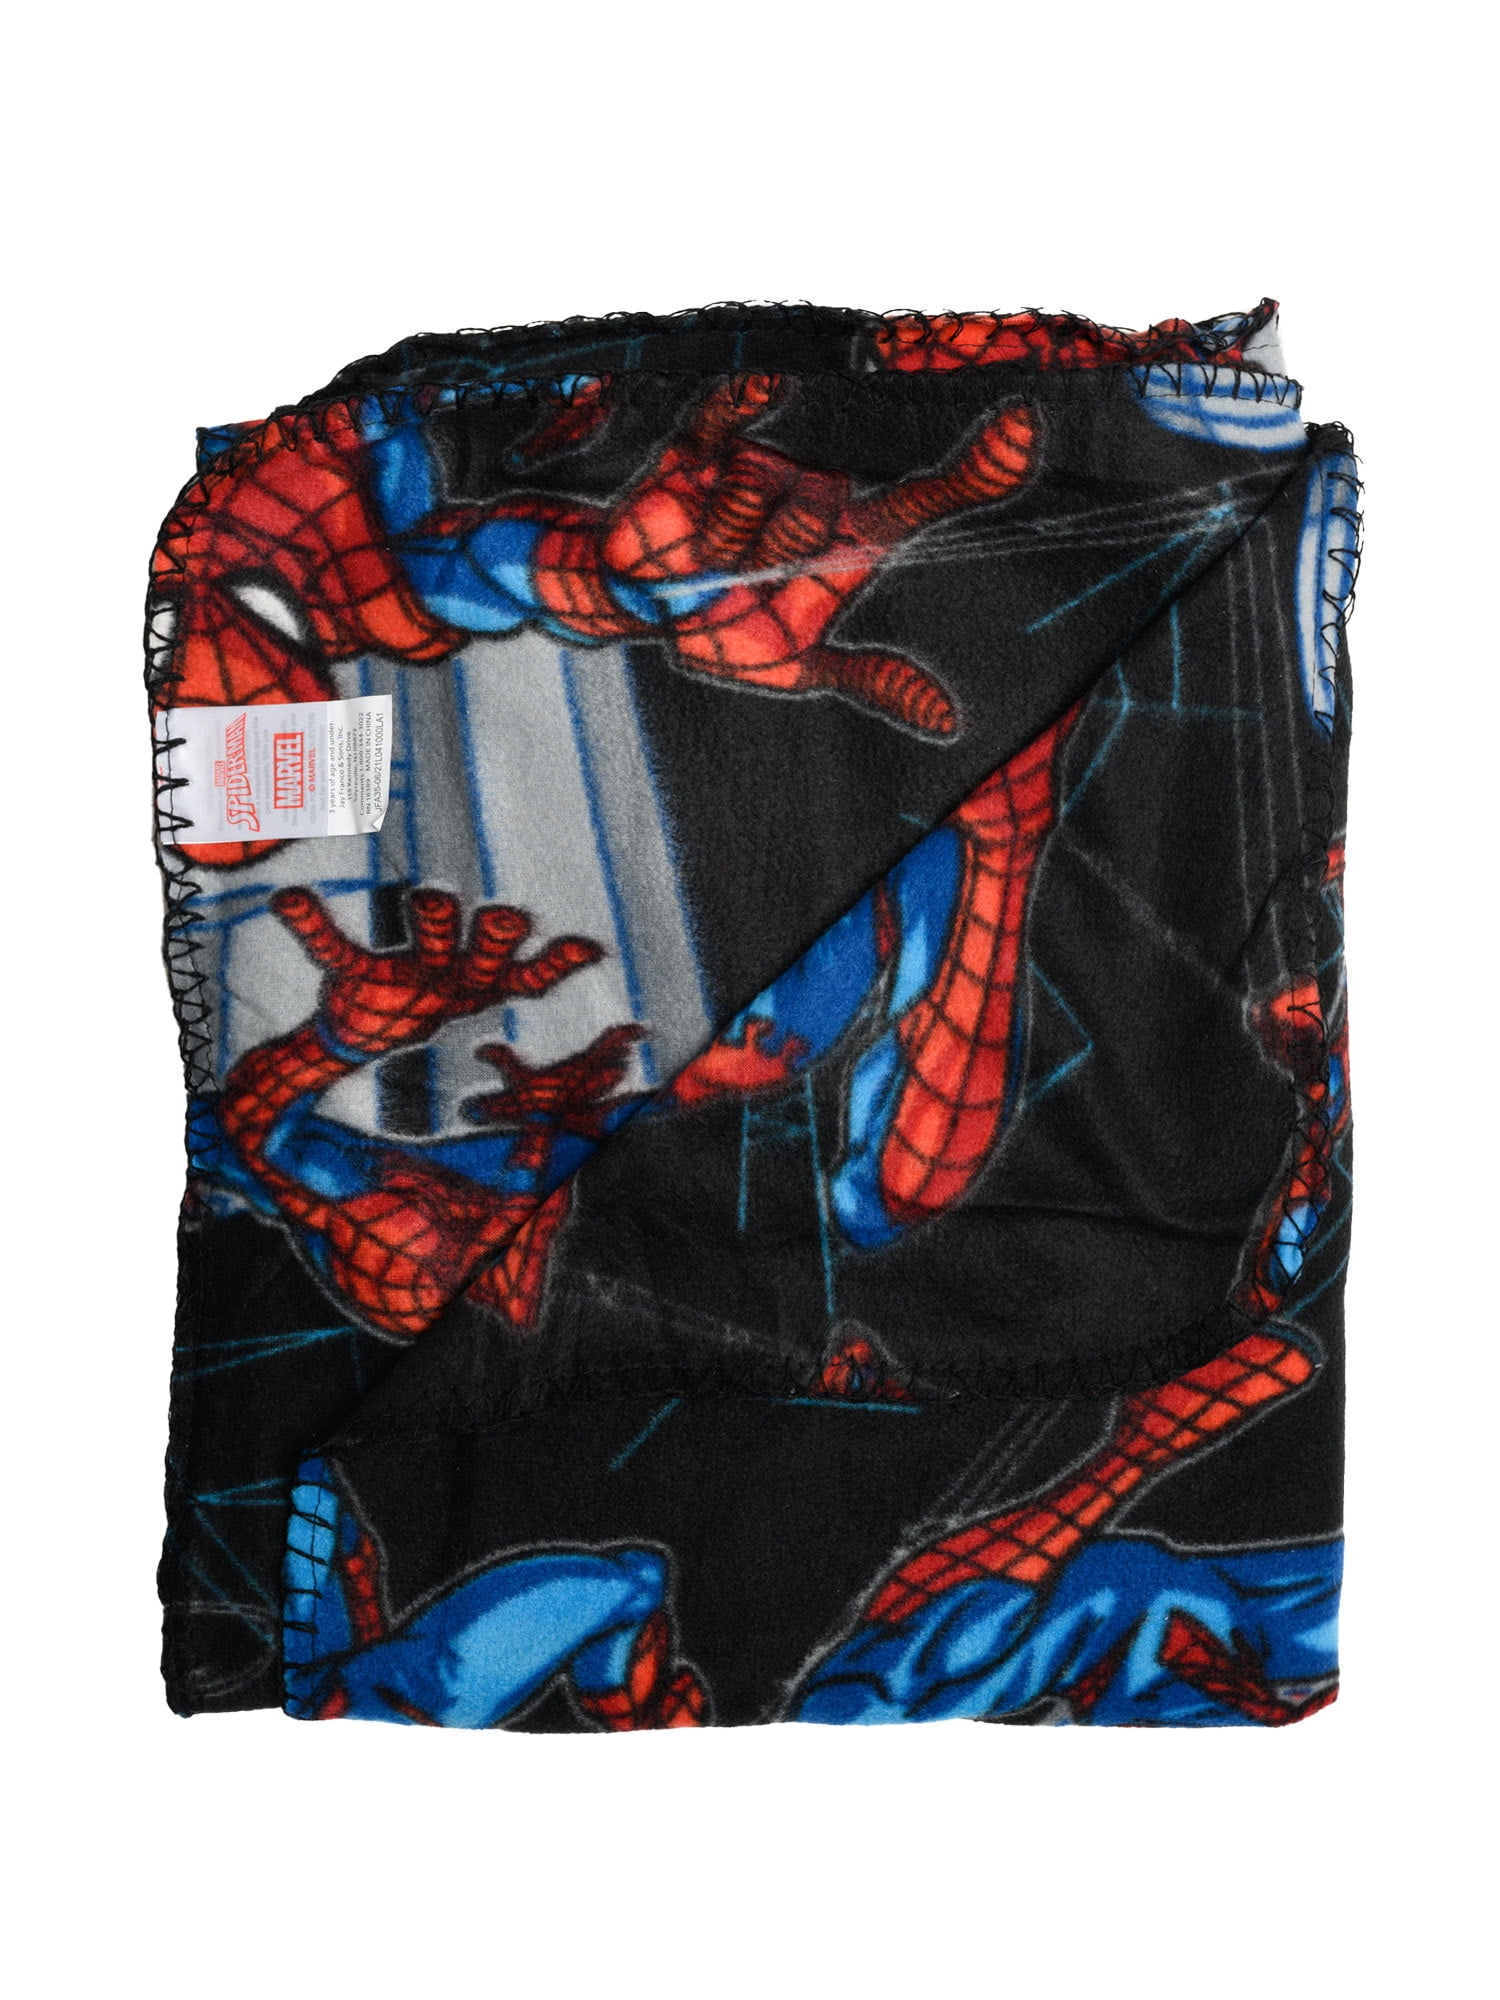 Coussin en fausse fourrure Spider-Man Marvel de Nemcor, bleu foncé